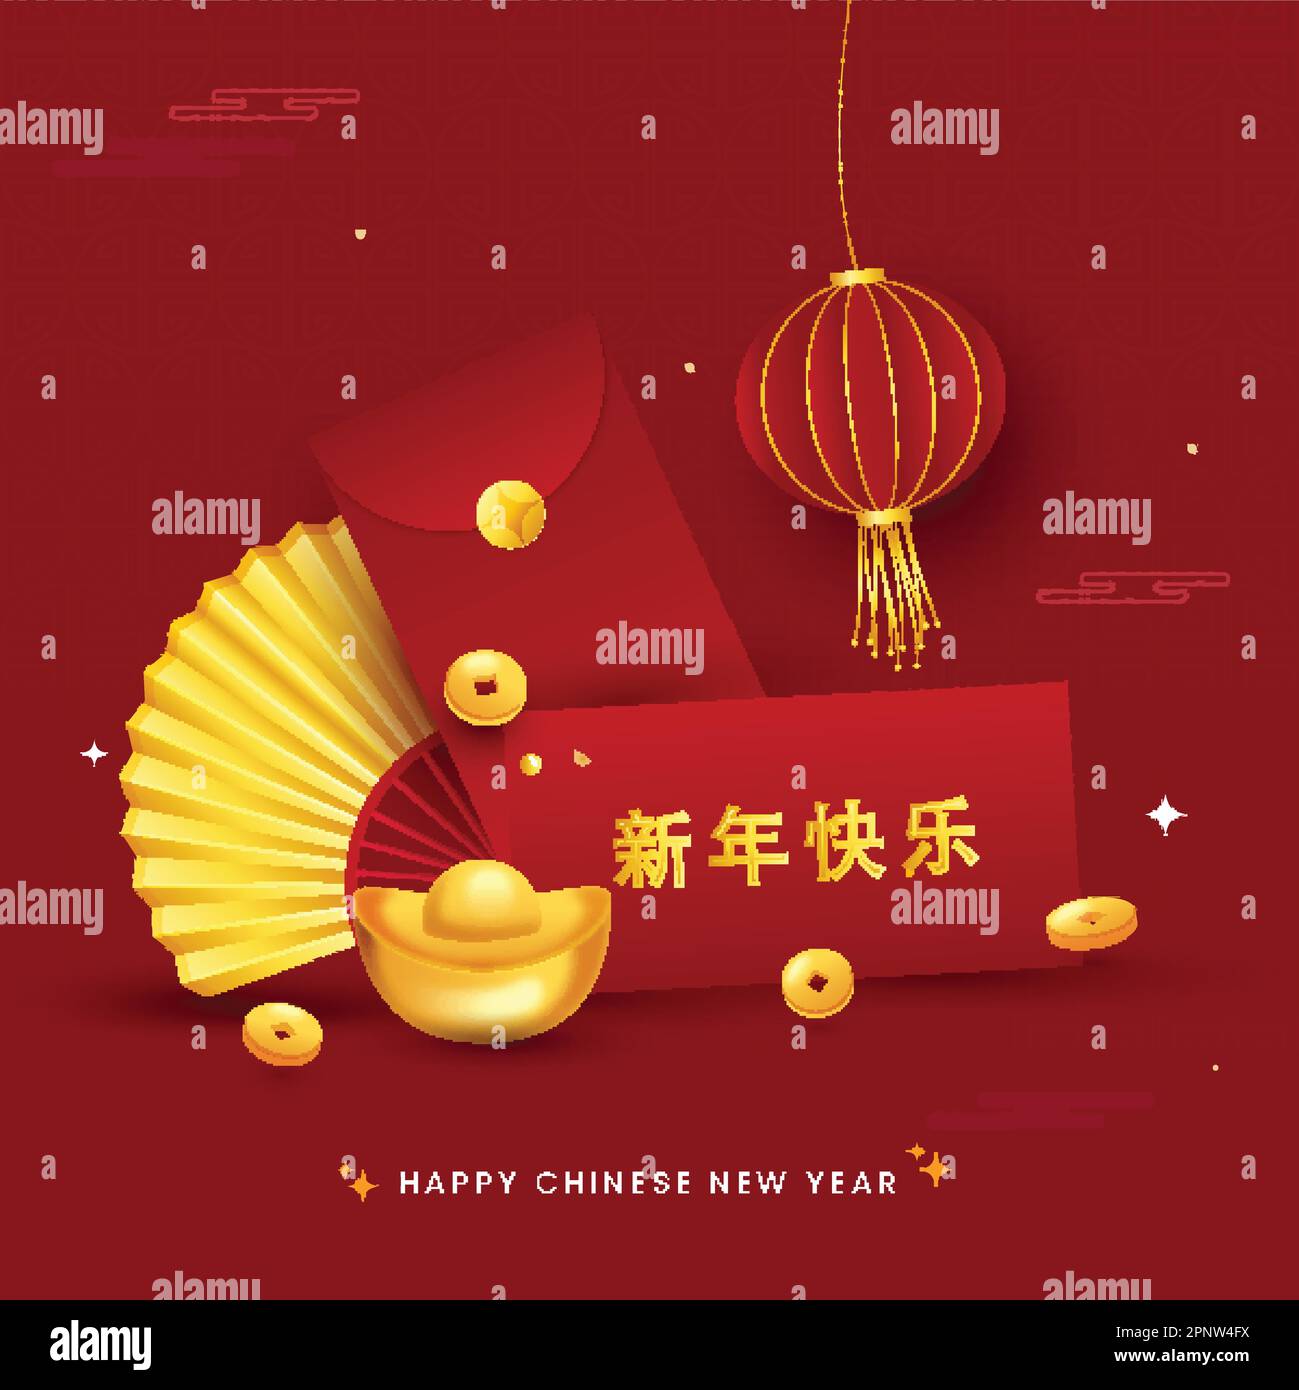 Scritta cinese di Golden Happy New Year con busta, lingotti, monete d'oro Qing, ventilatore pieghevole, Lanterna di carta Hang su sfondo rosso. Illustrazione Vettoriale